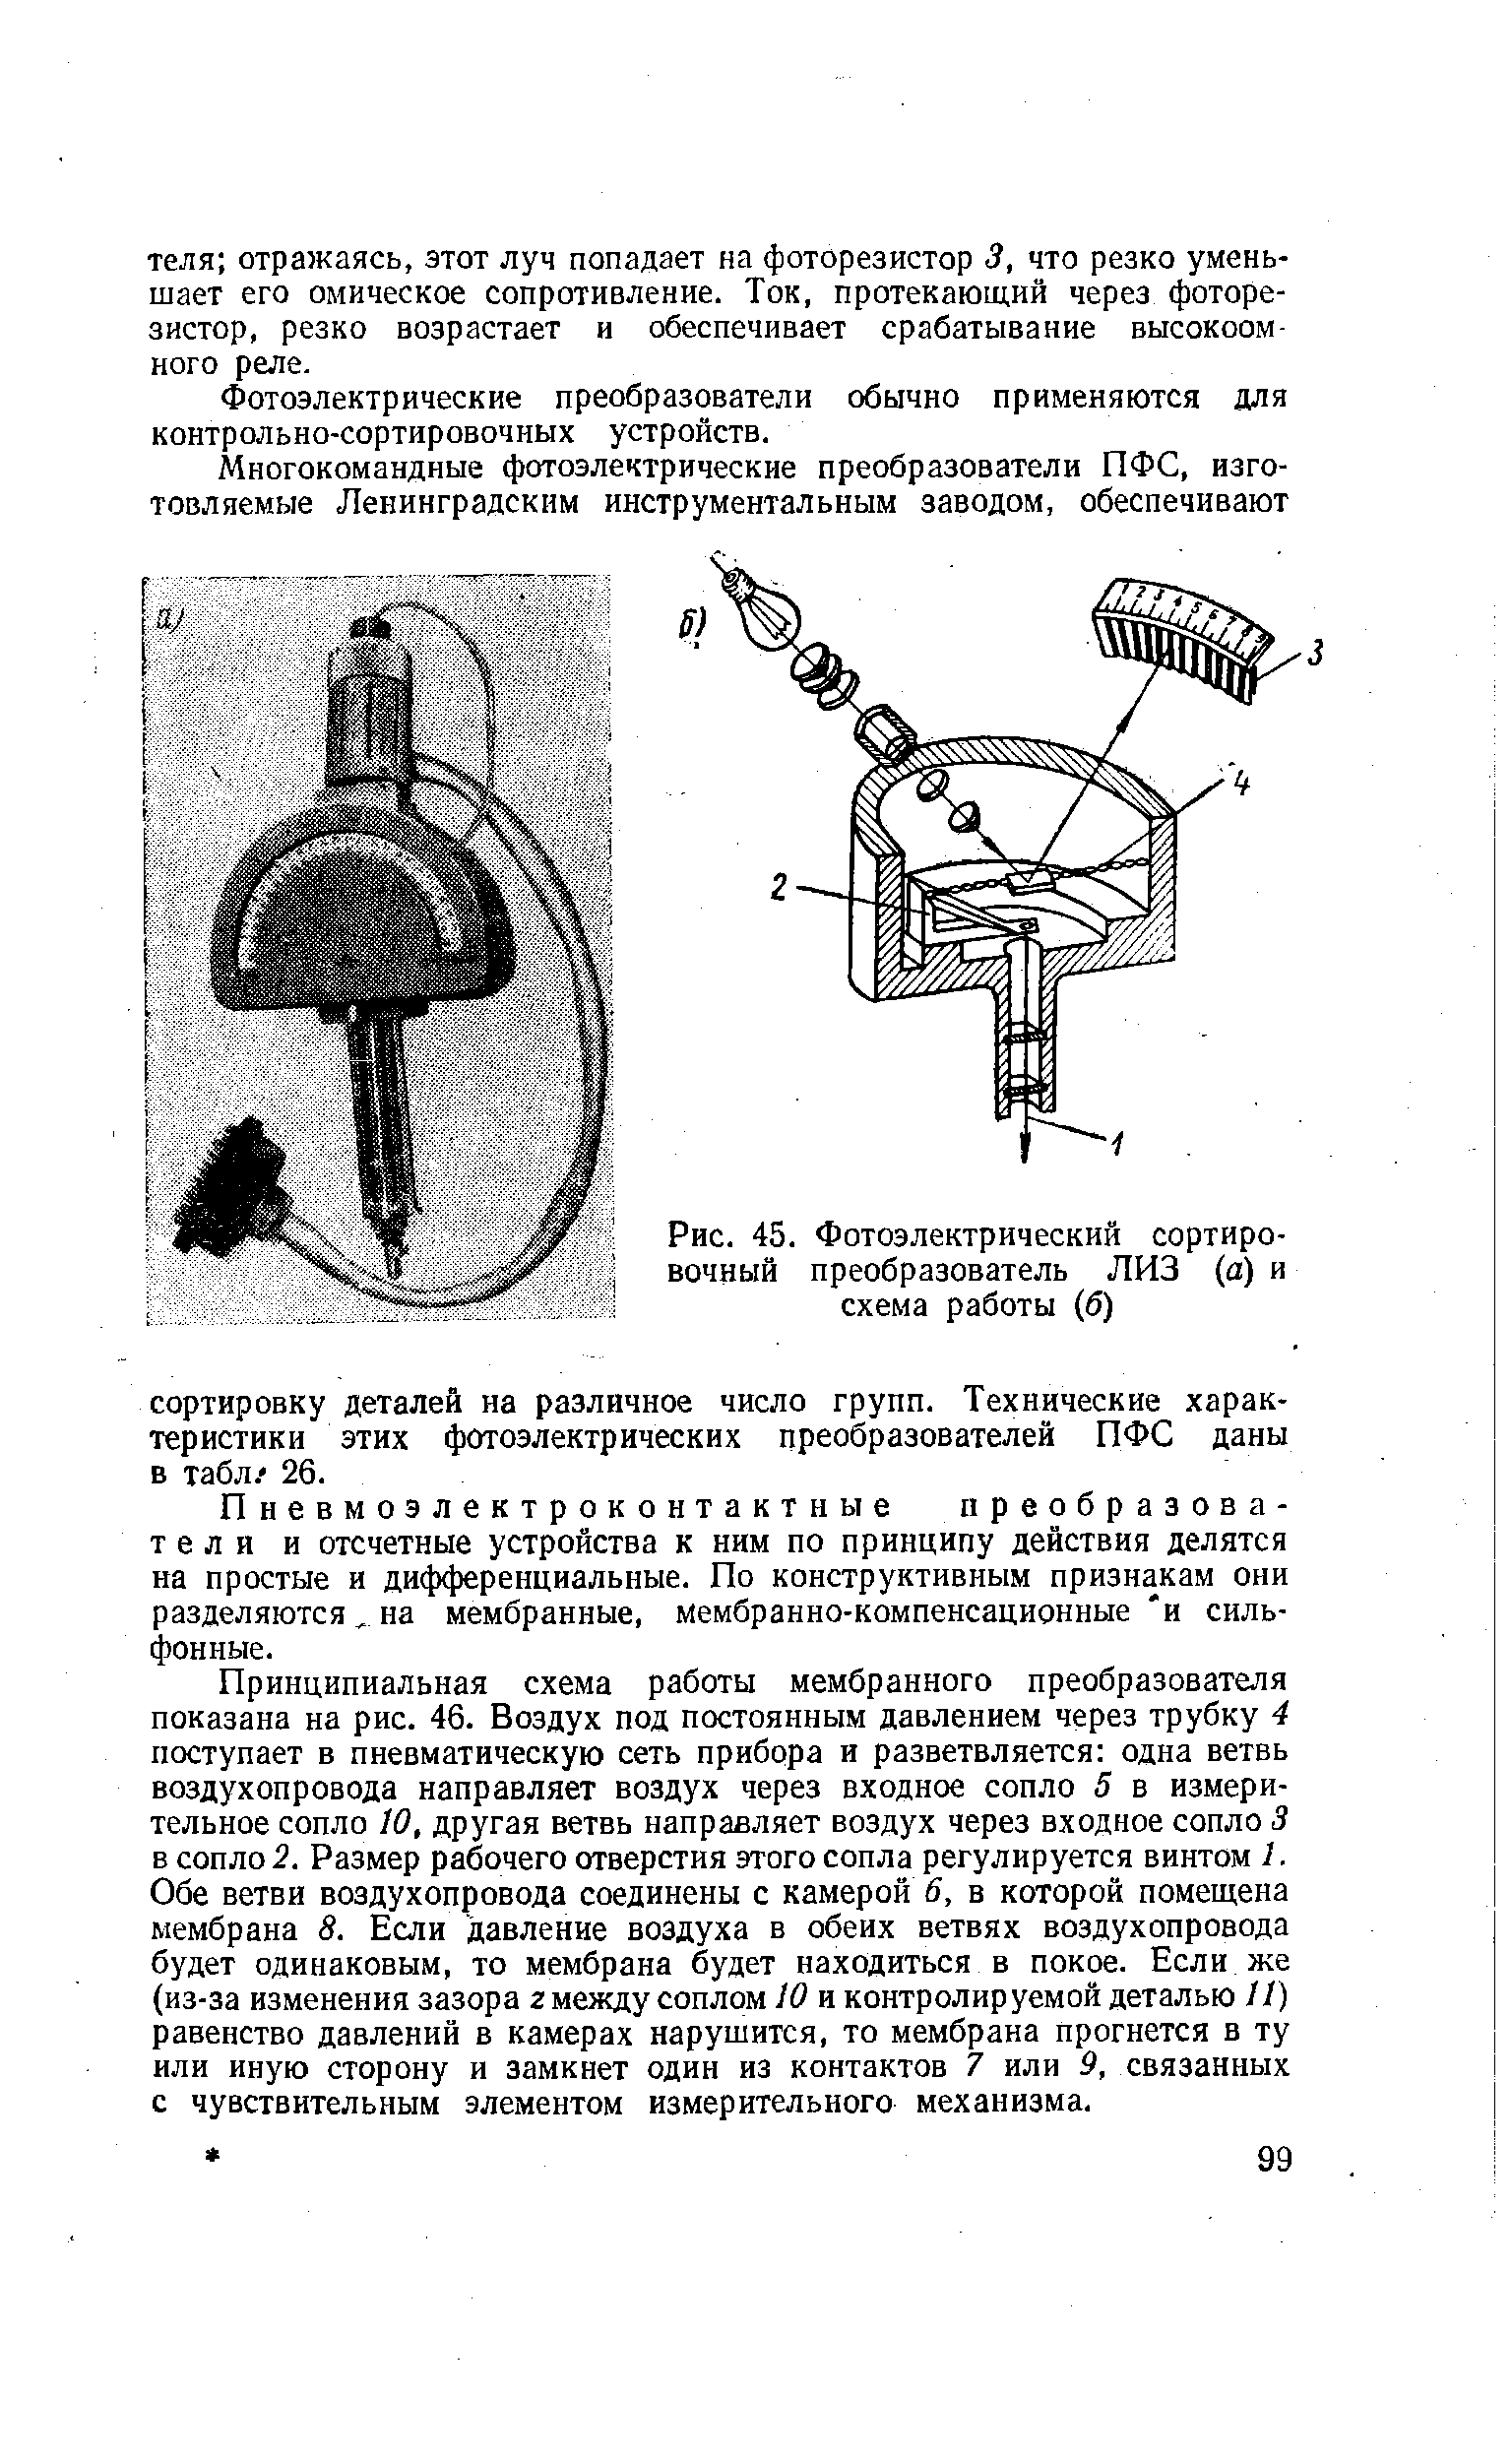 Рис. 45. Фотоэлектрический сортировочный преобразователь ЛИЗ (а) и схема работы (б)
